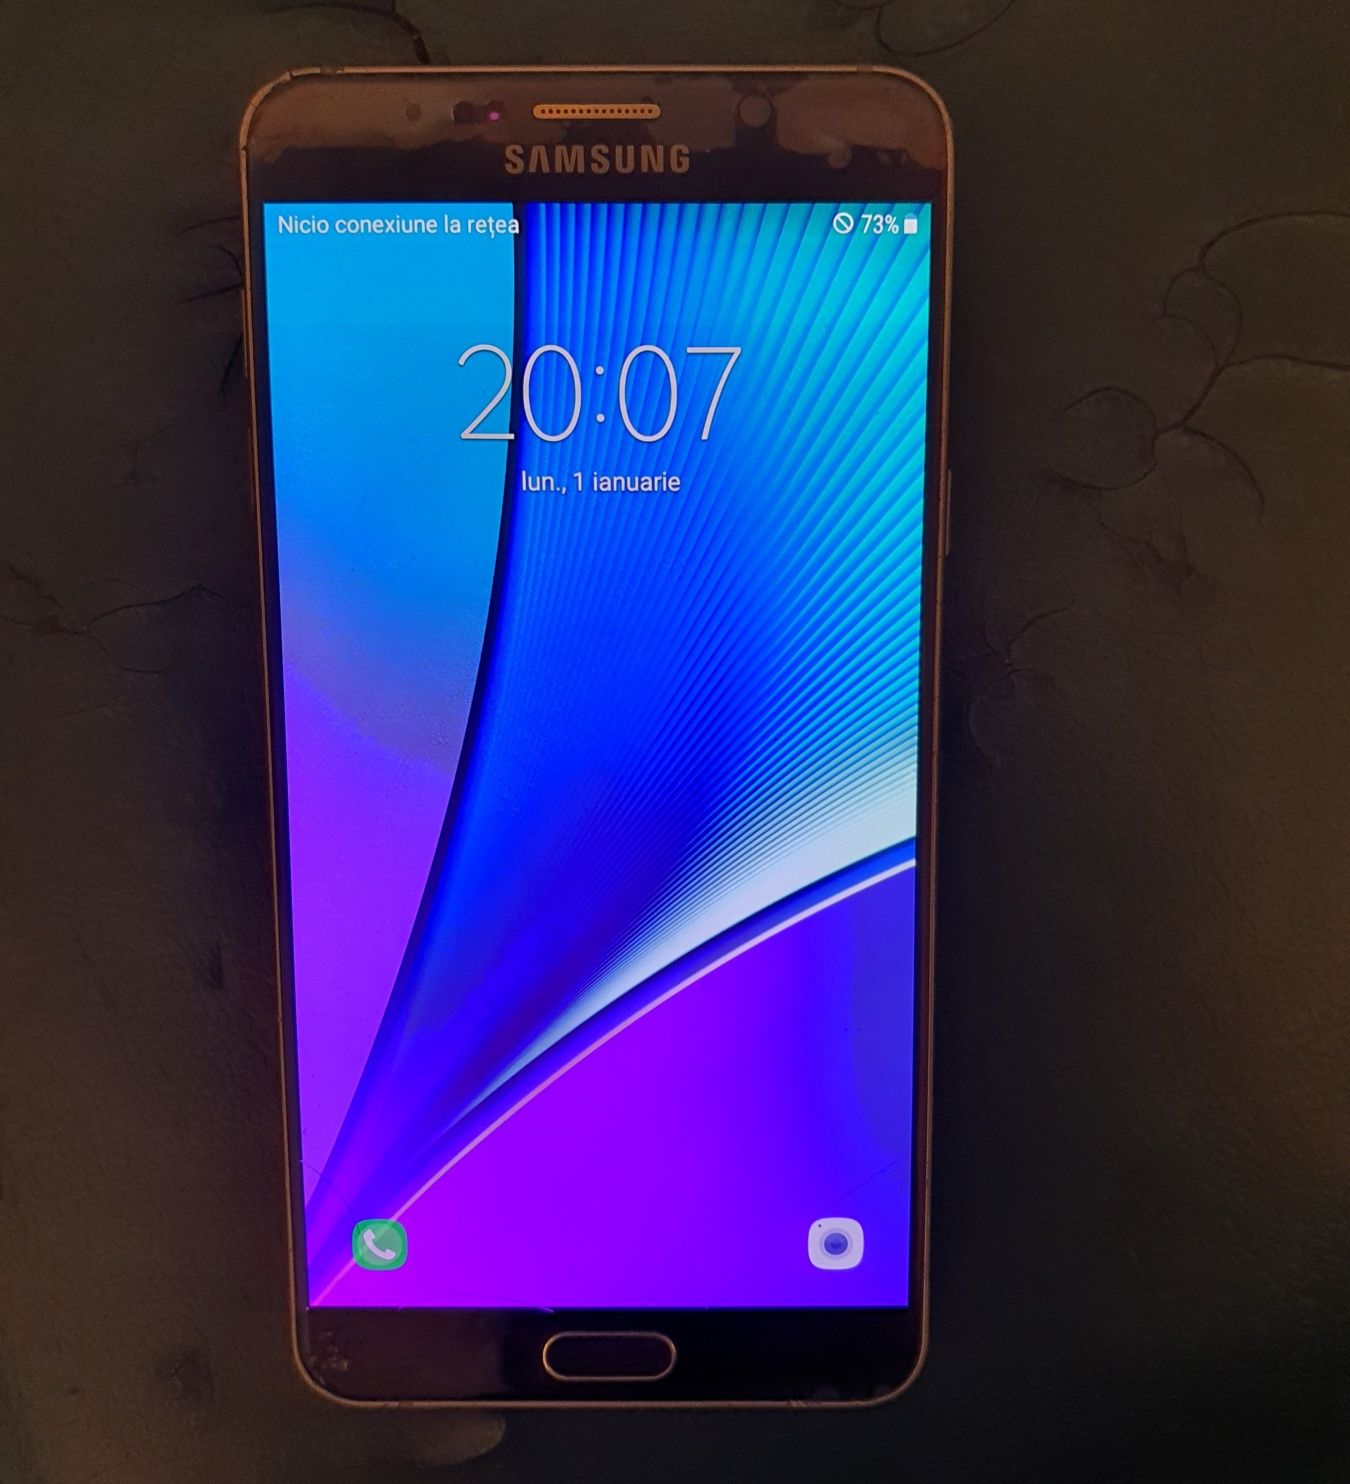 Samsung Note 5 cu fisura invizibila pe display si spate spart